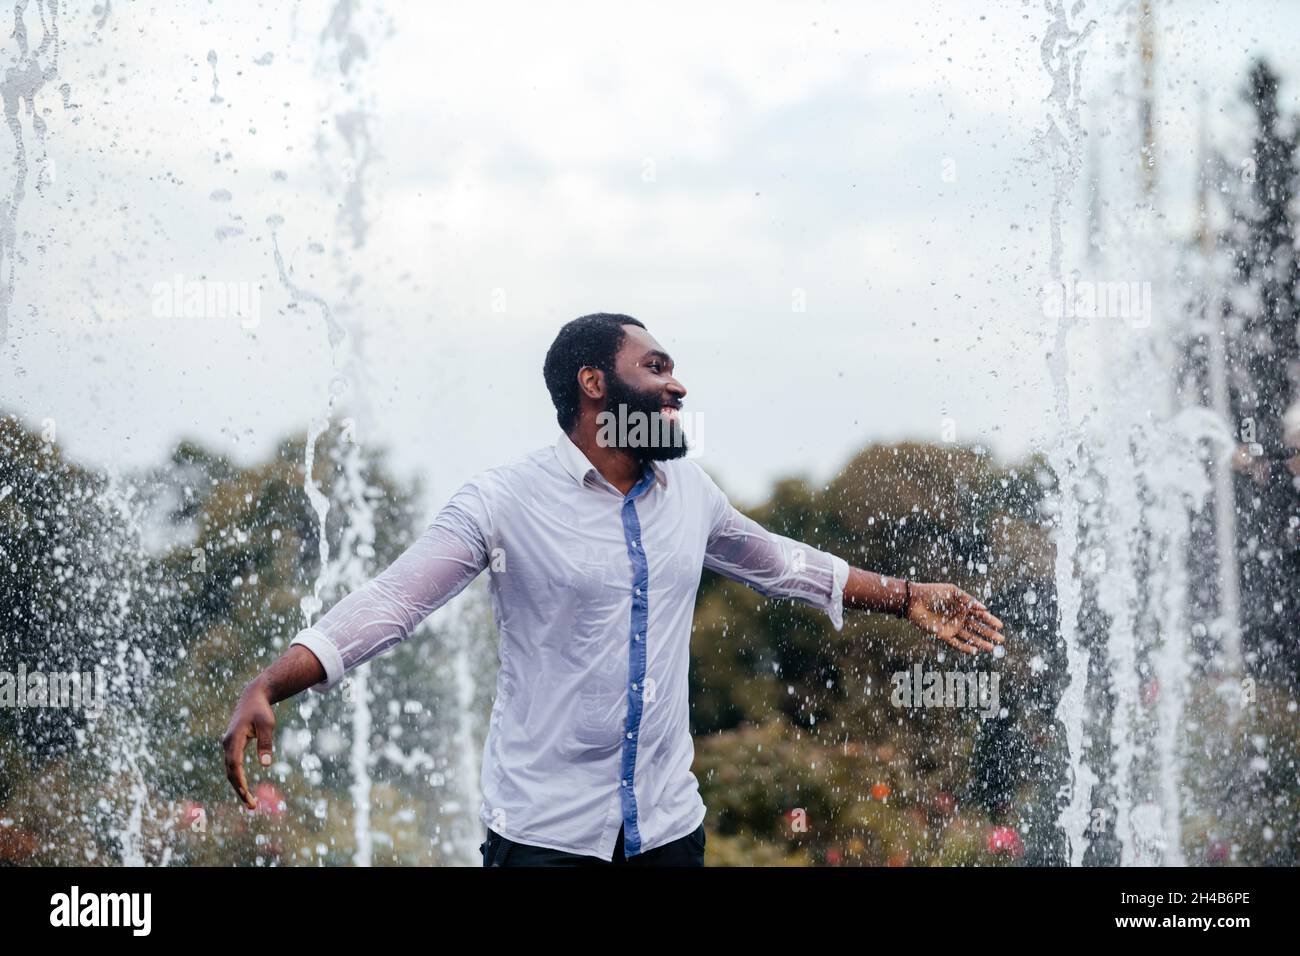 Le jeune homme souriant s'amuse dans une fontaine de la ville.Il porte une chemise blanche mouillée Banque D'Images